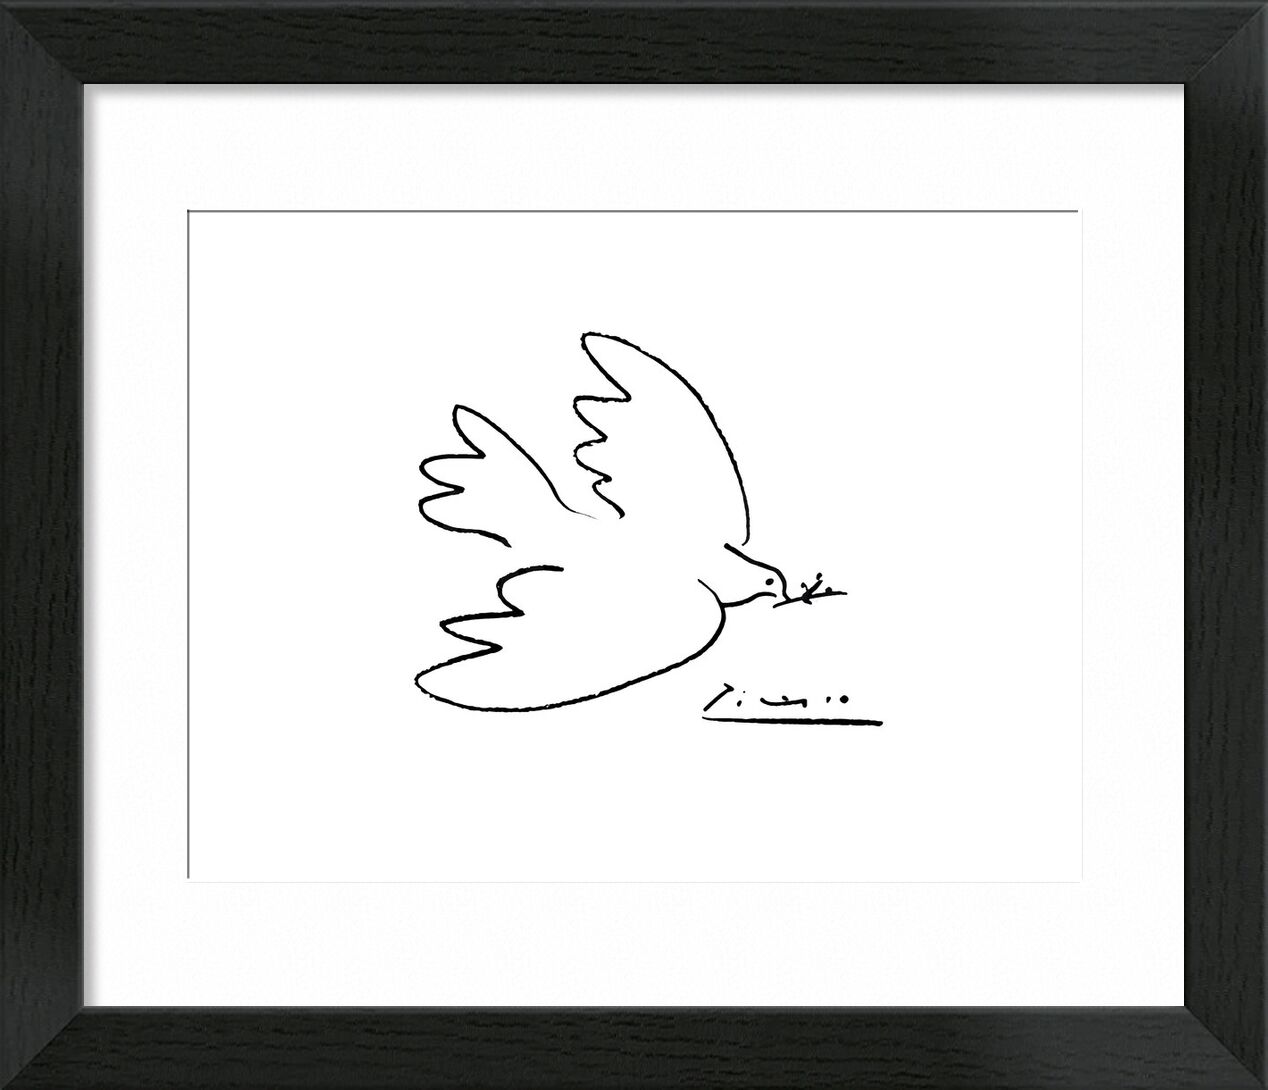 Dove of peace - PABLO PICASSO desde Bellas artes, Prodi Art, PABLO PICASSO, dibujo a lápiz, paloma, dibujo